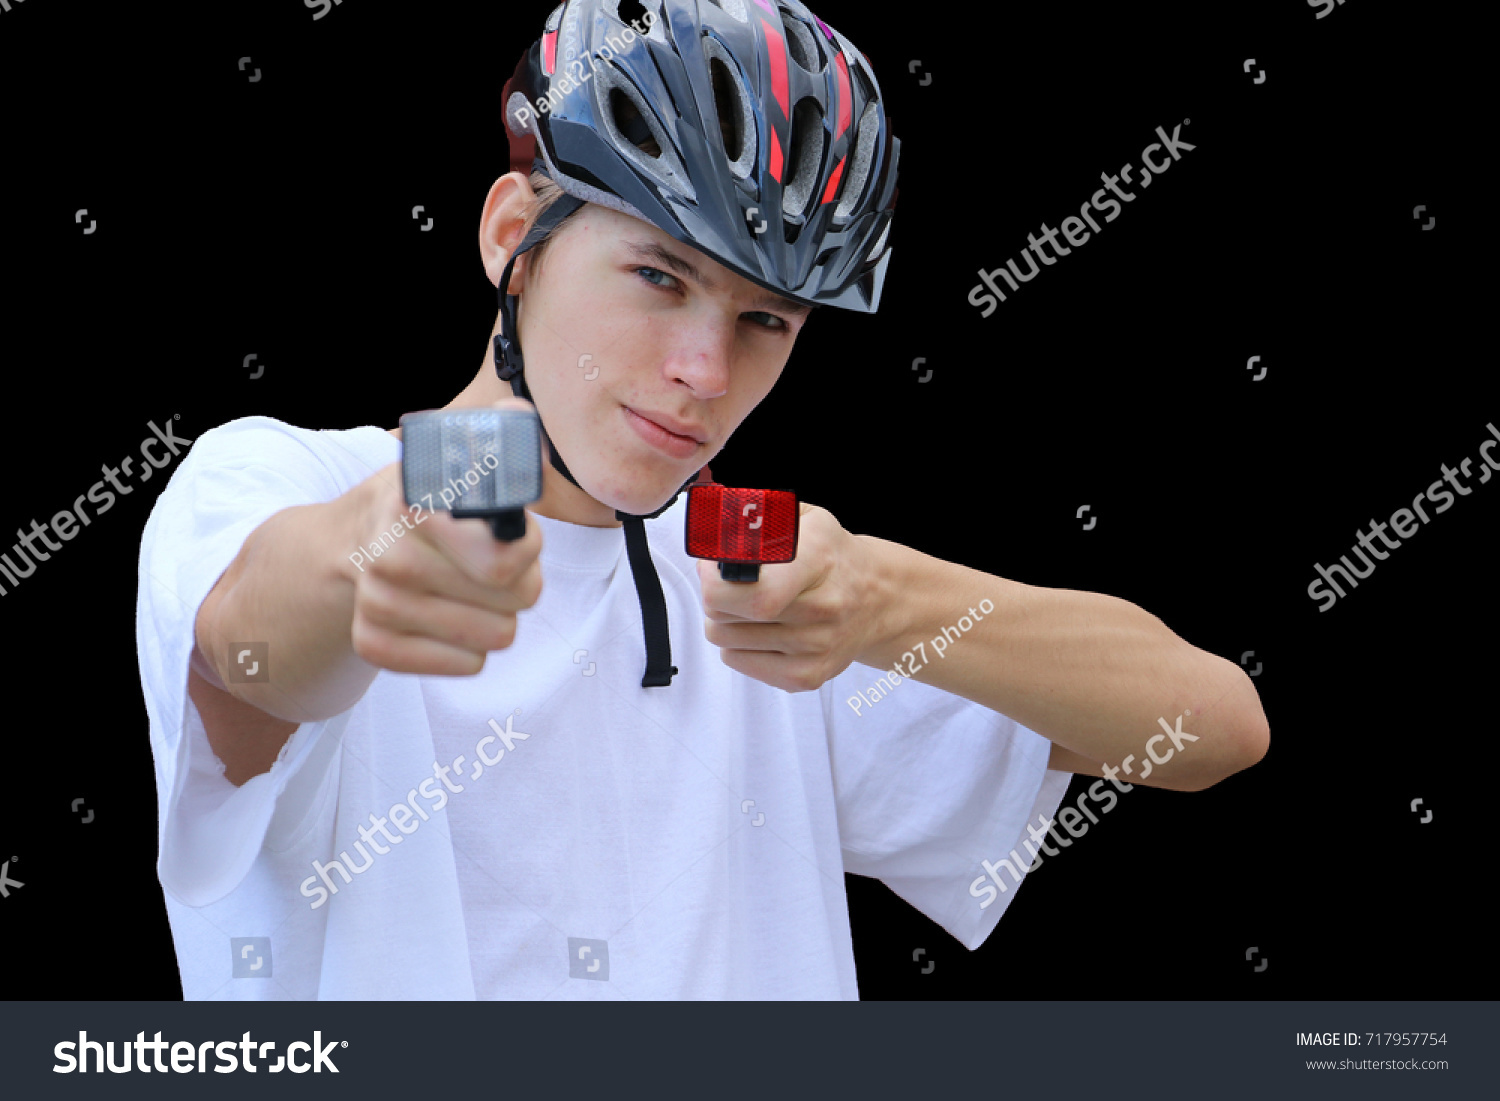 teenager bike helmet